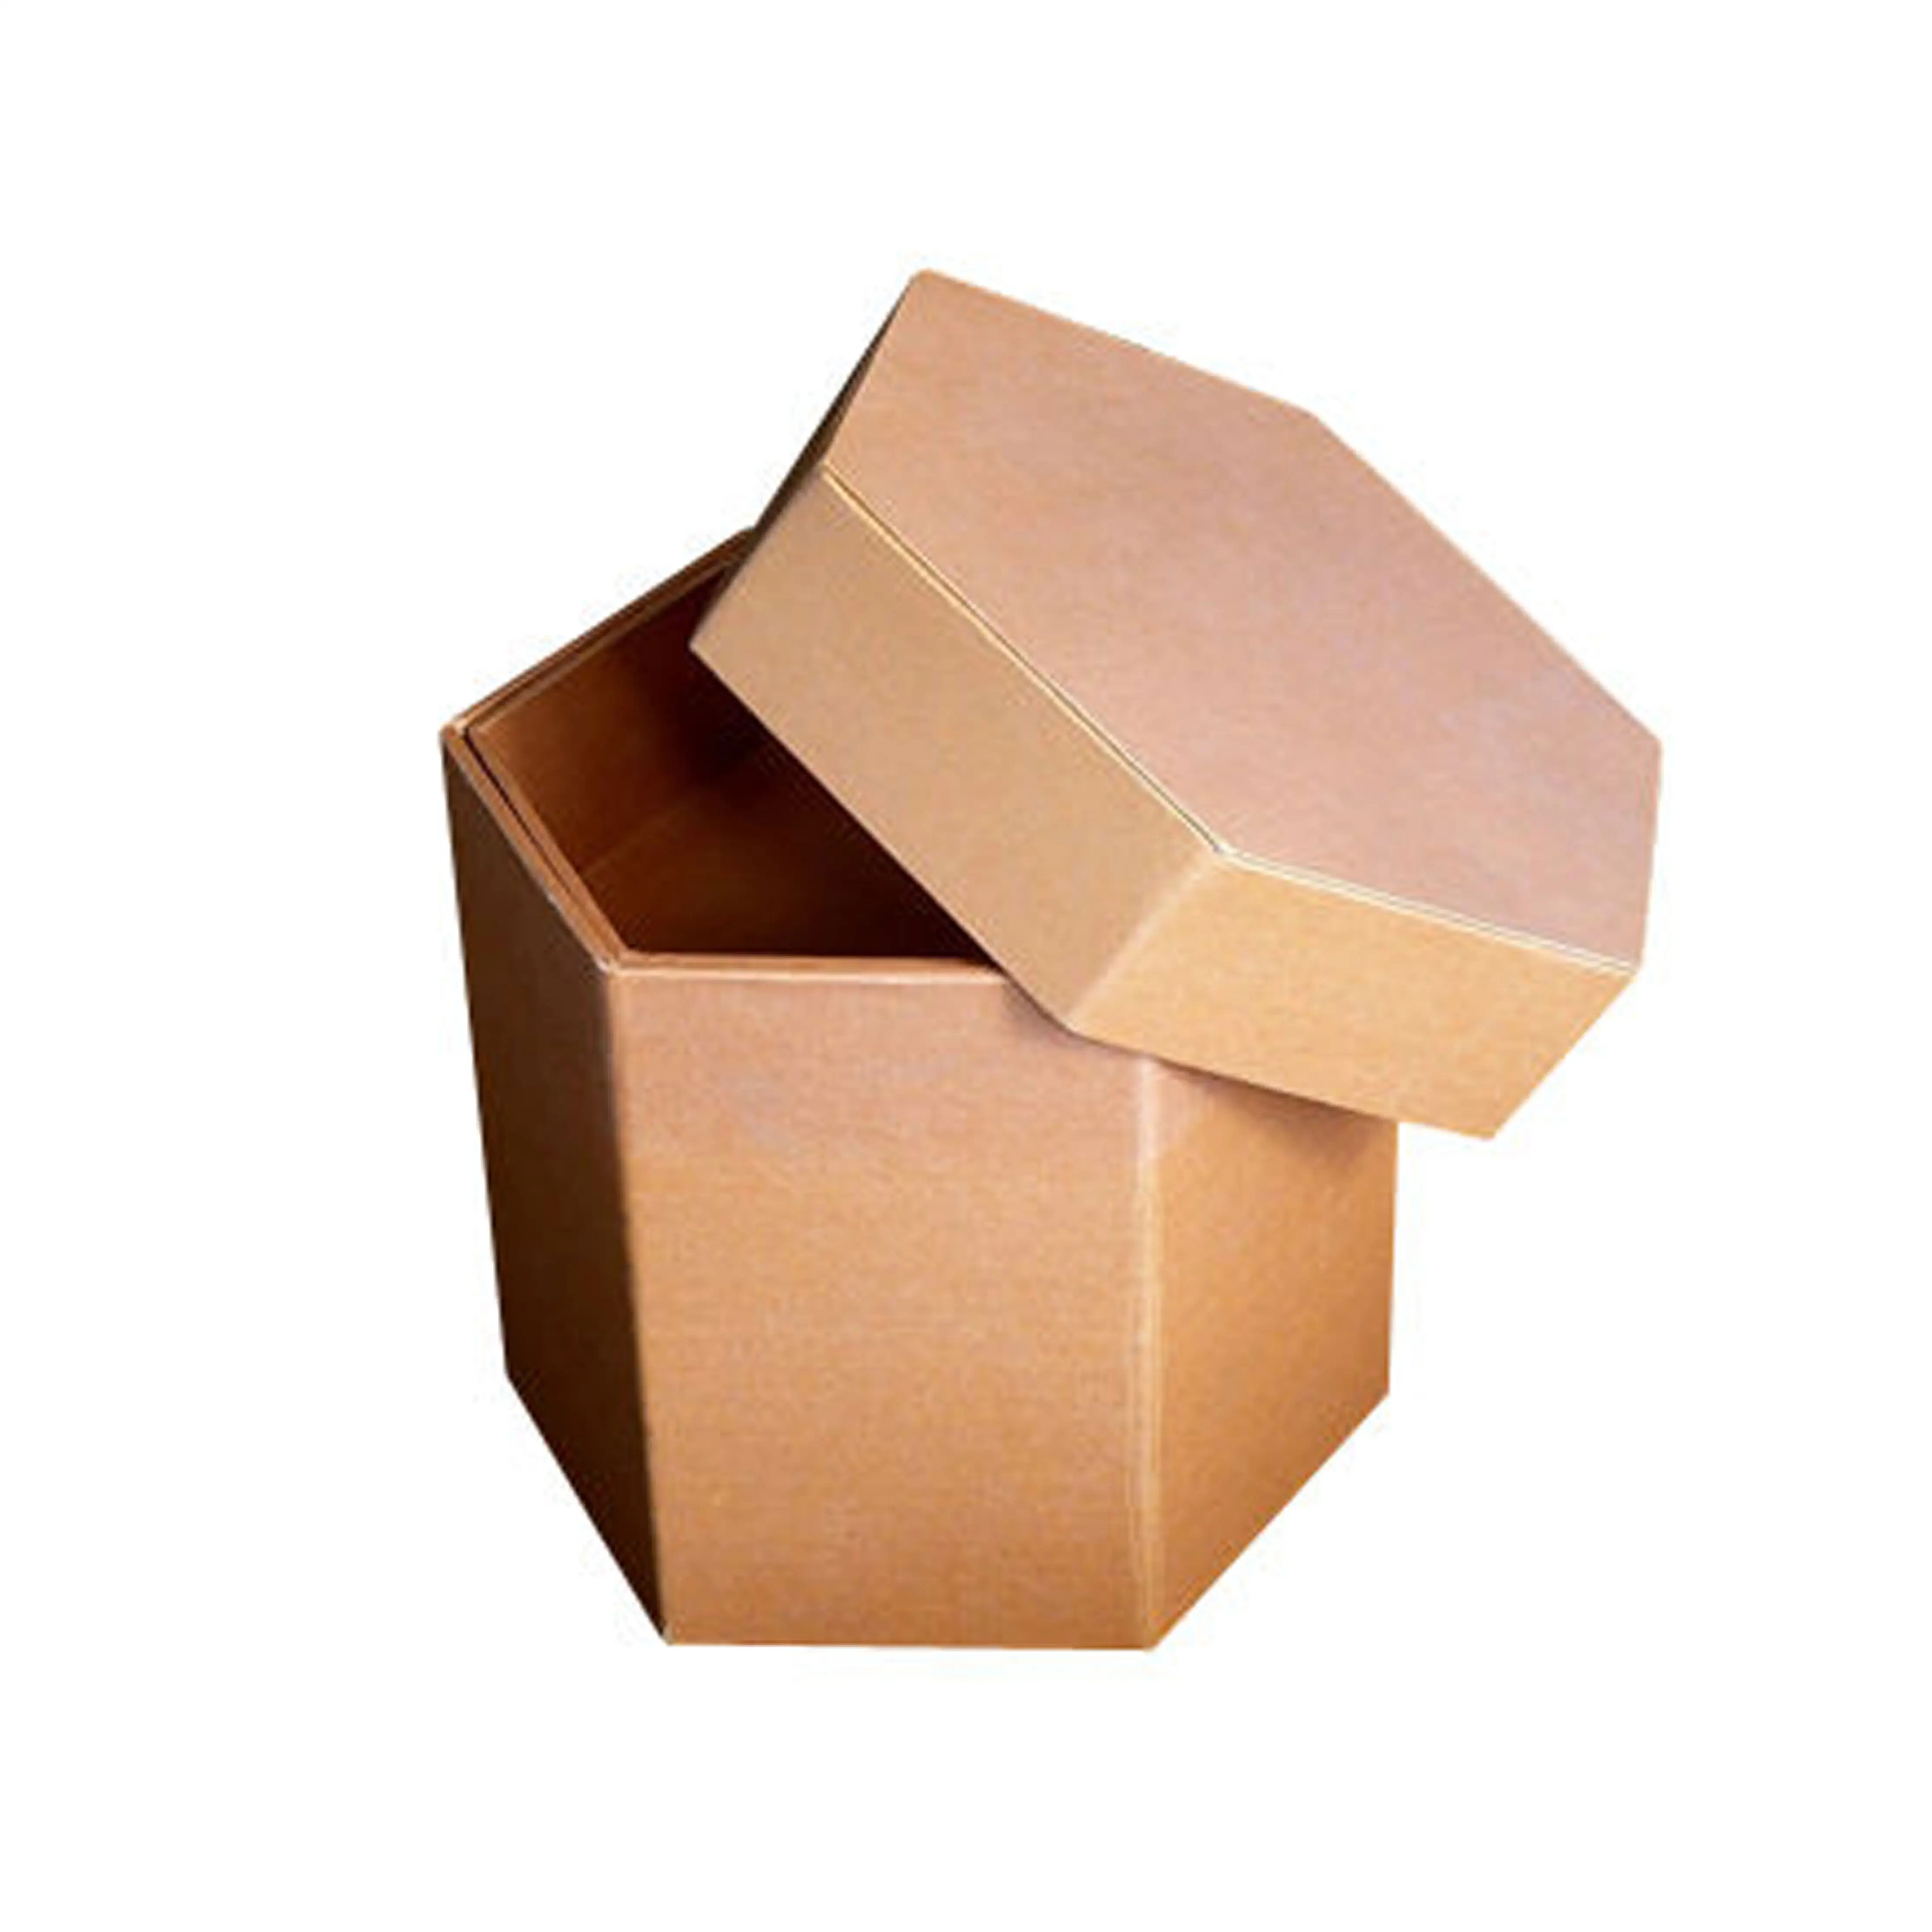 Caixa de embalagem de embalagem em forma de hexágono, reciclável, de superfície marrom, rígida, caixa de embalagem de presente